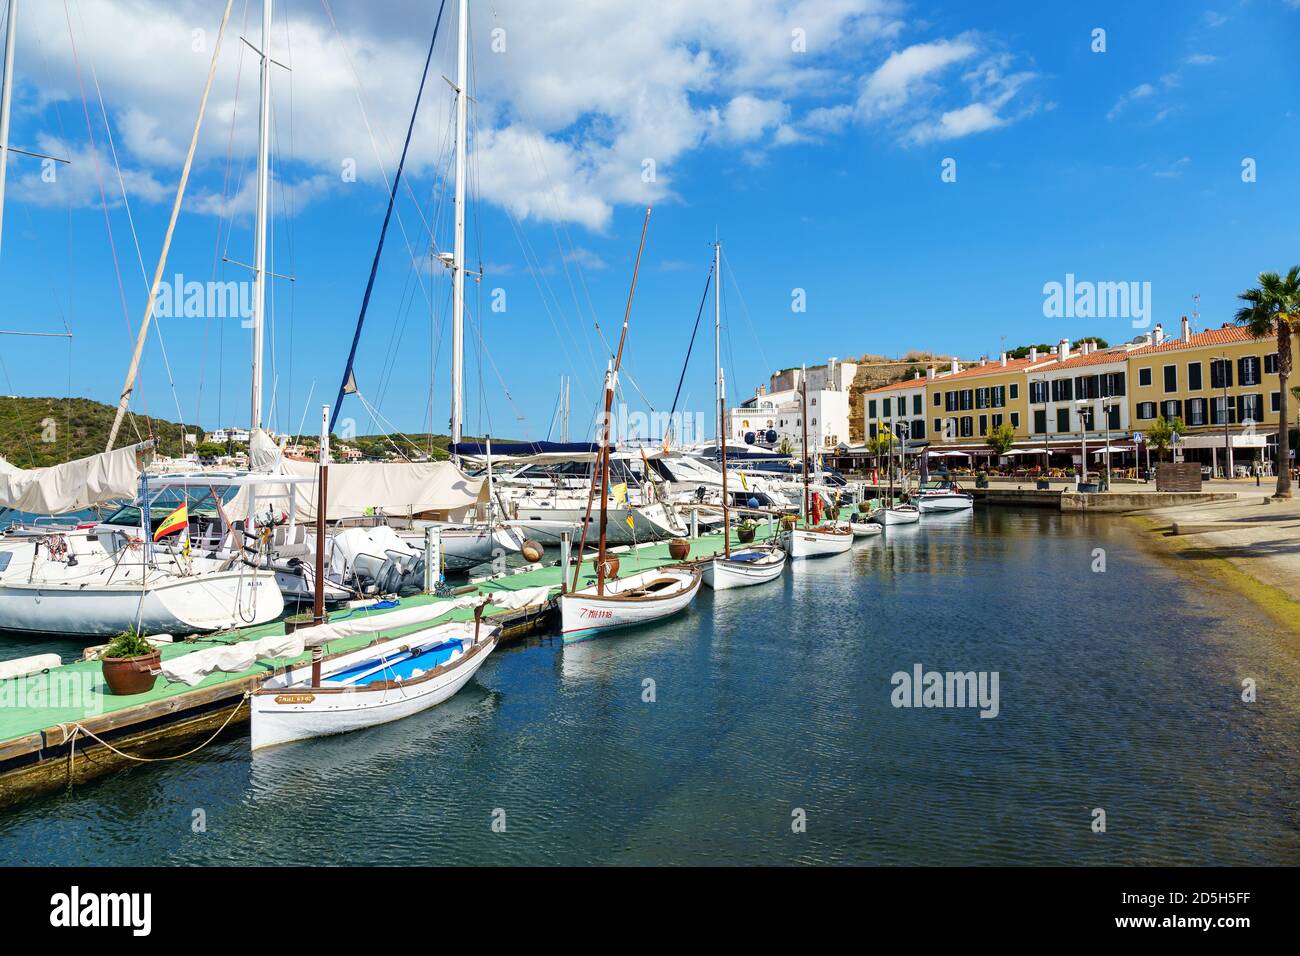 Mahon Hafen und paseo maritimo - Mahon, Menorca, Balearen, Spanien Stockfoto